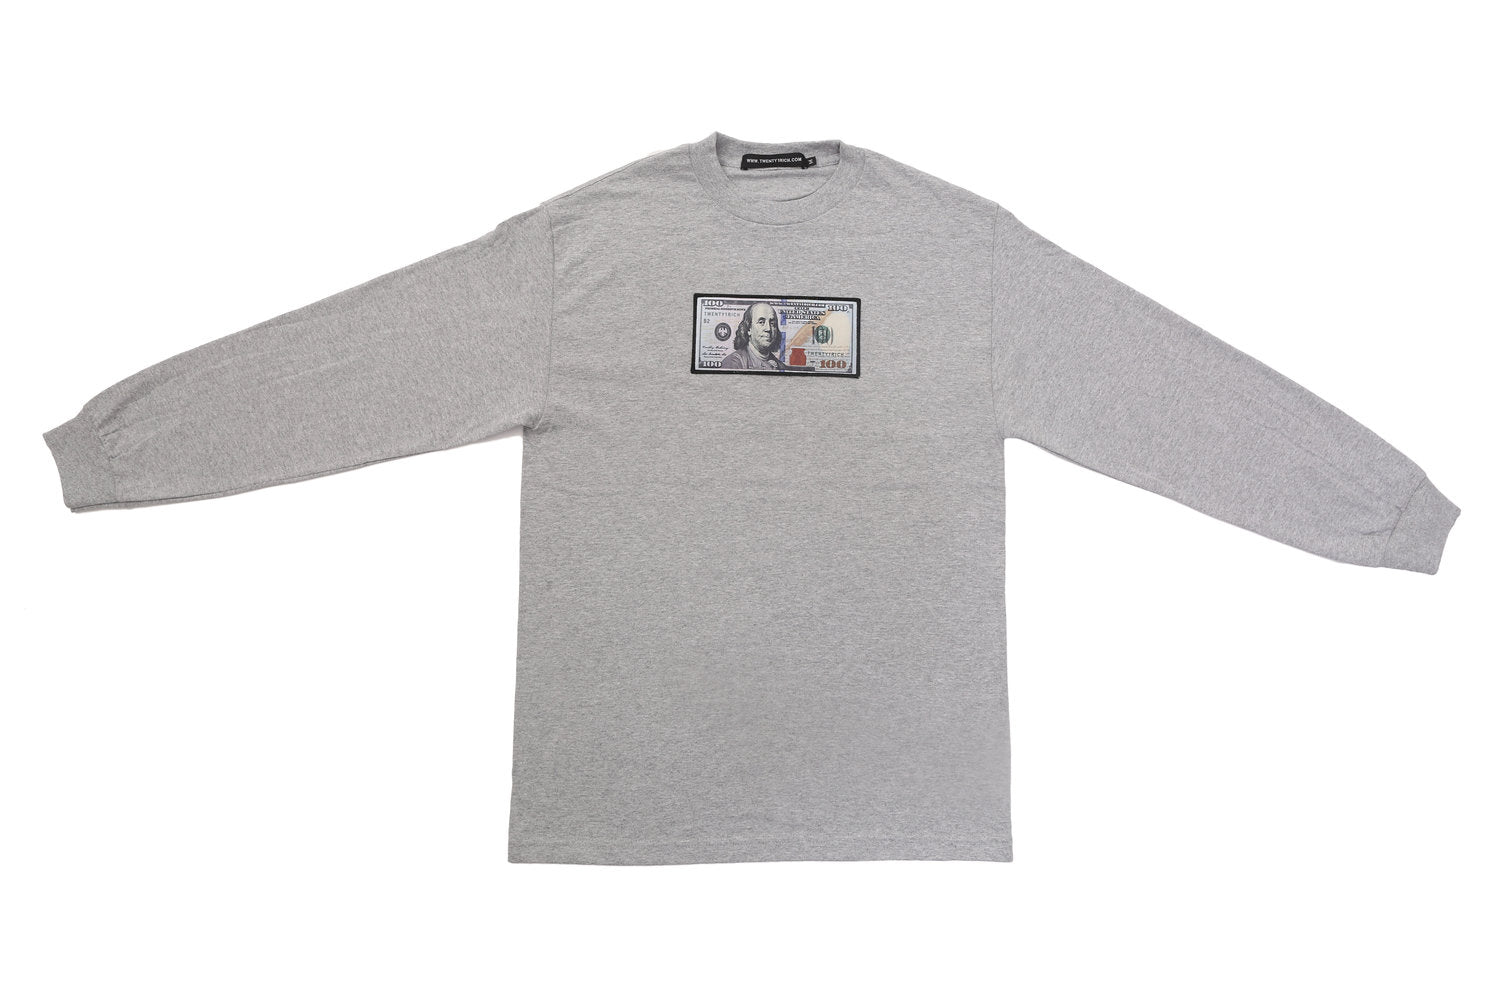 Grey Long Sleeve Shirt by Twenty1Rich with a $100 logo